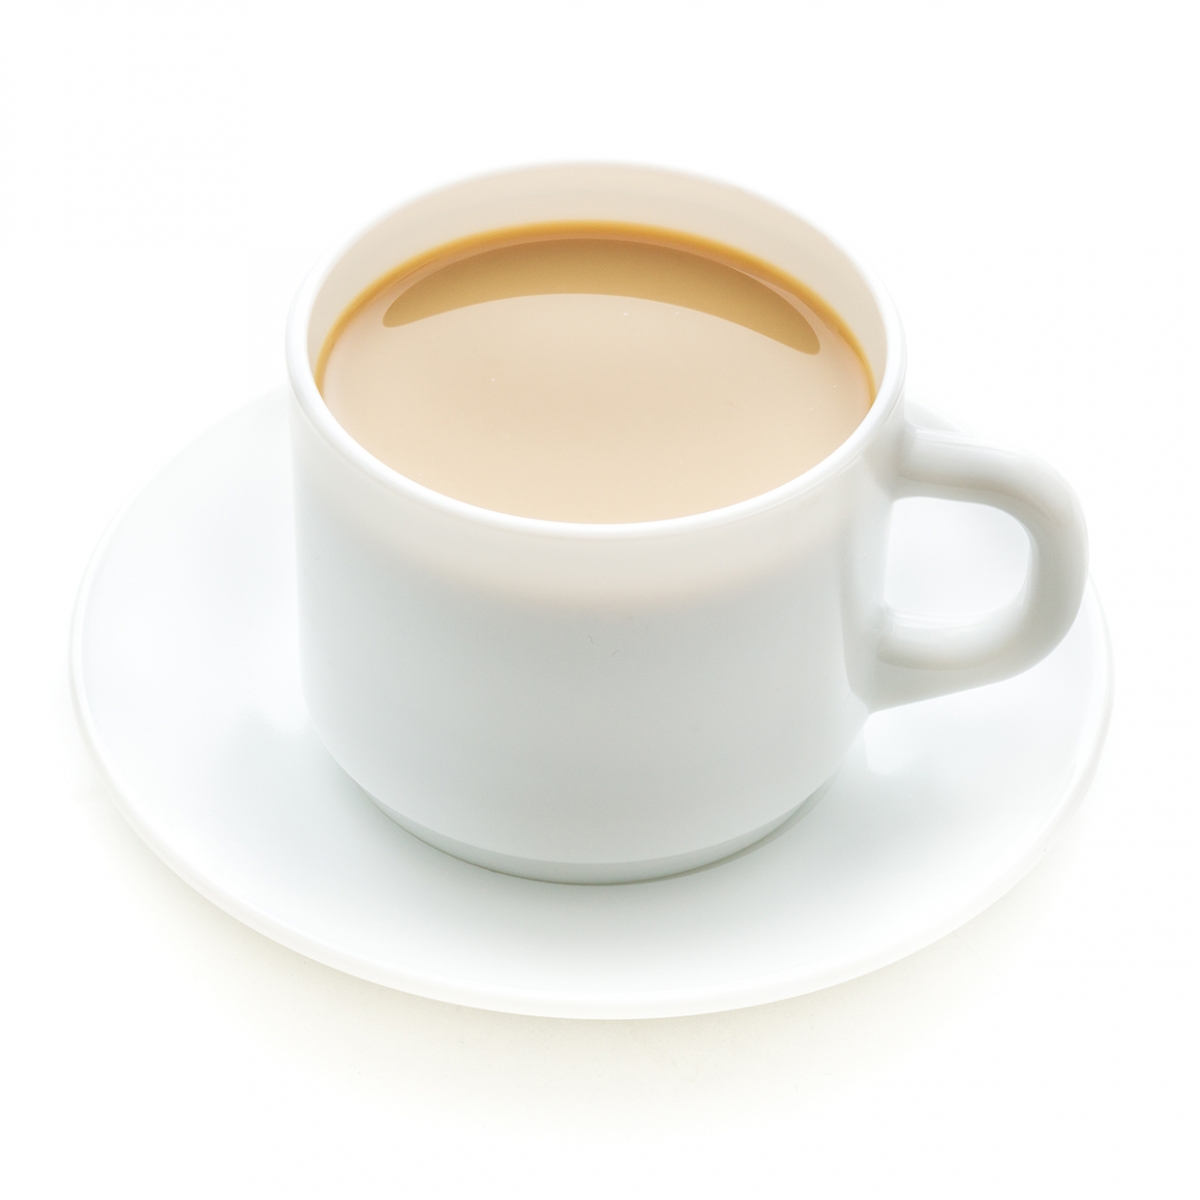 Imagen en la que se ve una taza con café con leche